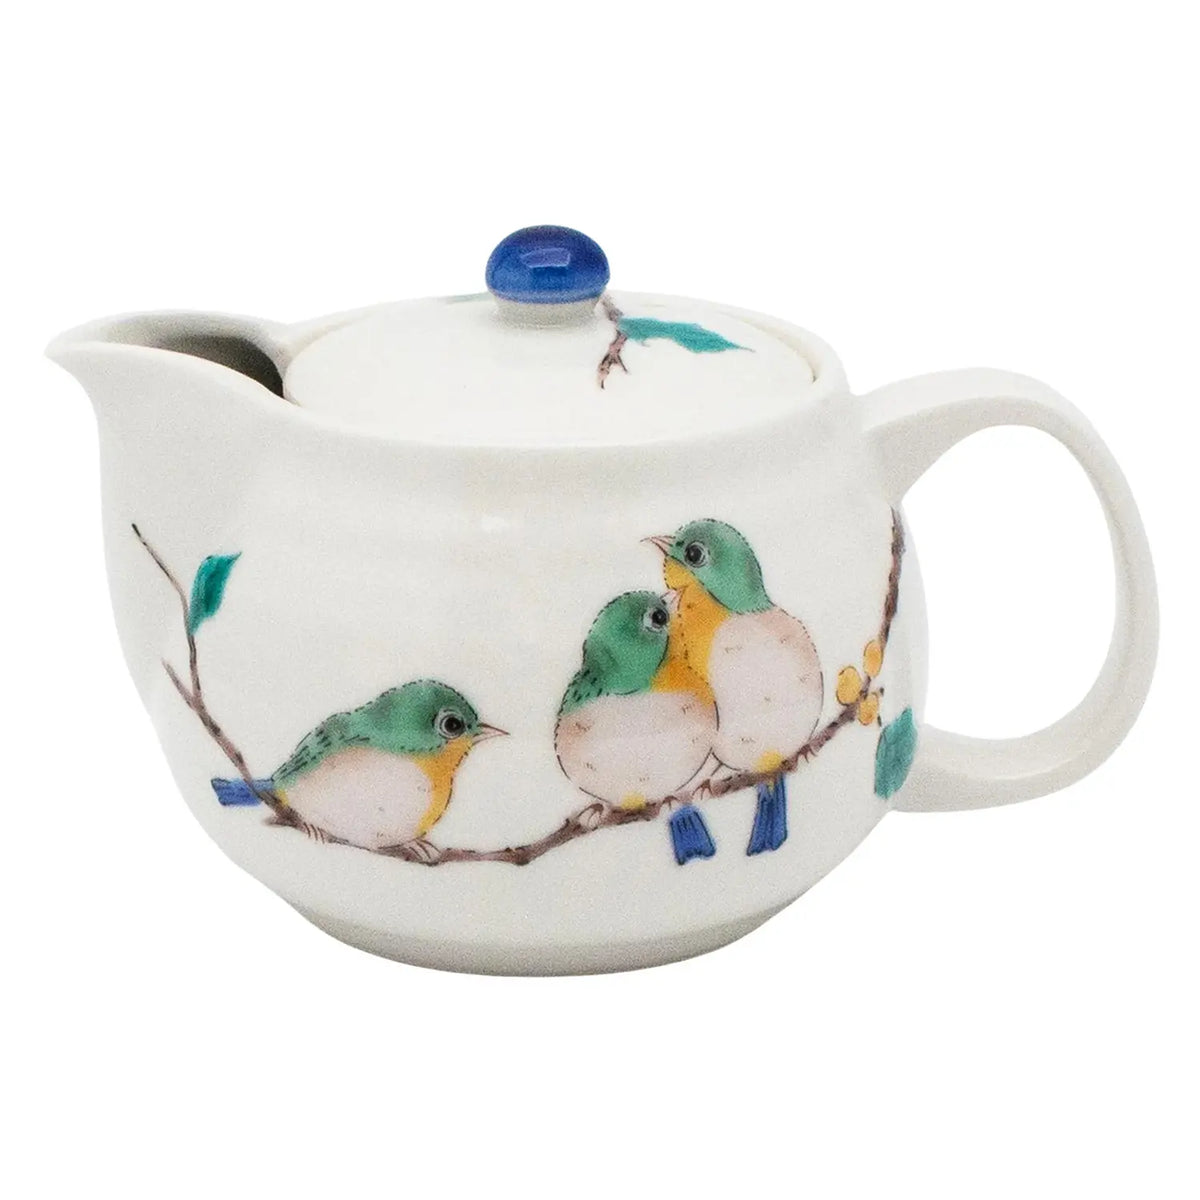 SEIKOU Kutani Porcelain Kyusu Teapot Mejiro with Tea Strainer